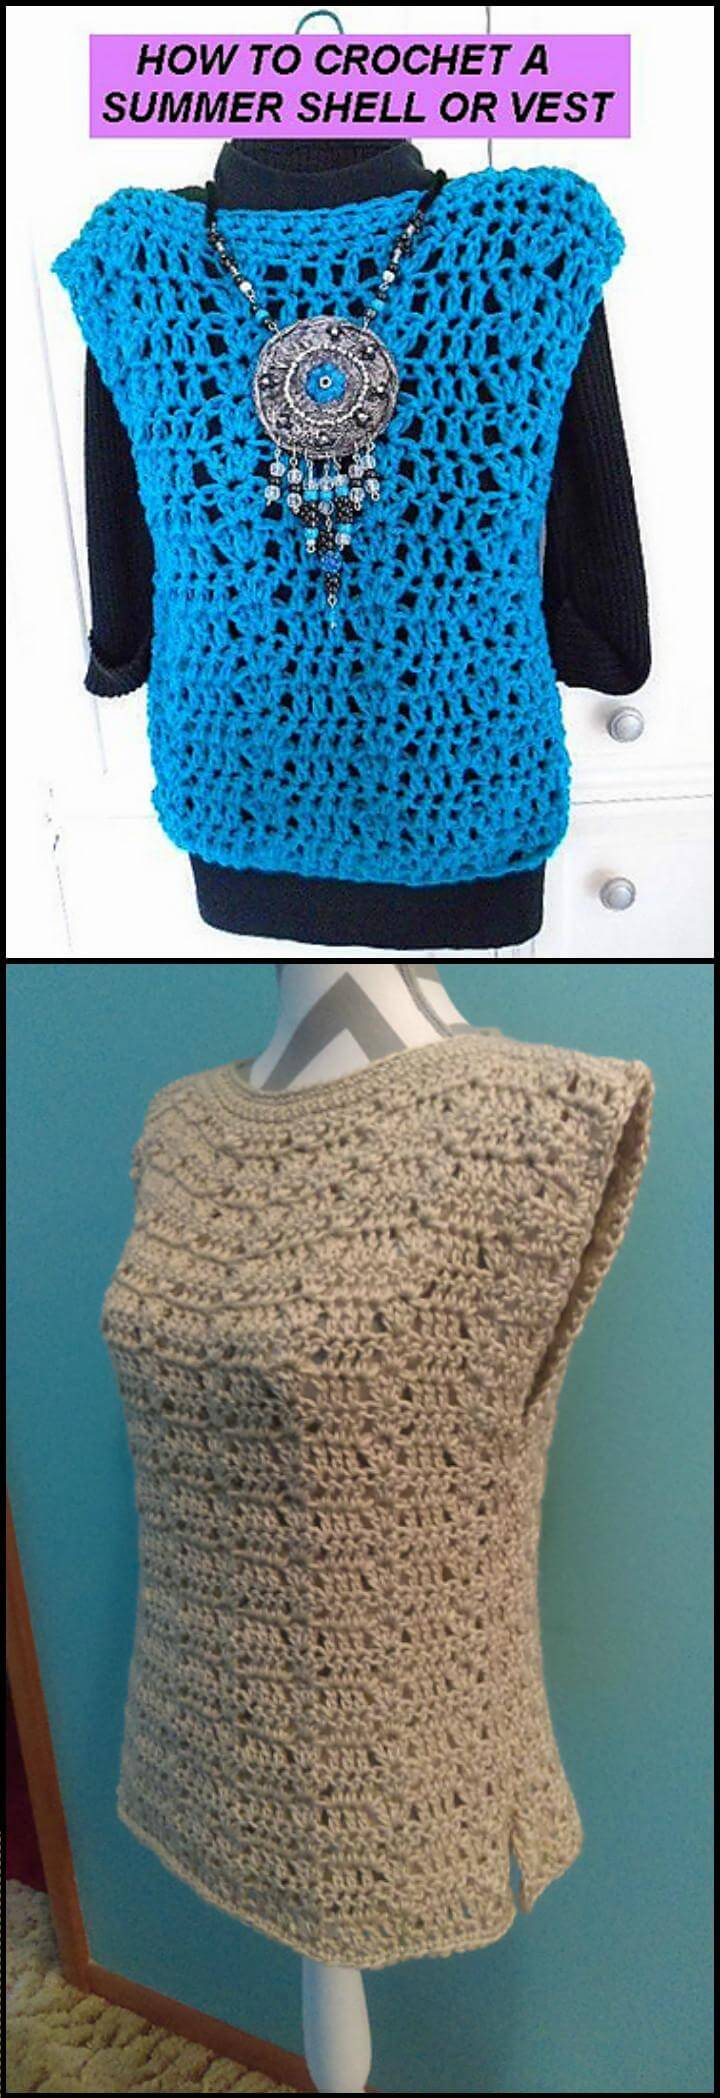 Easy Crochet Vest Pattern 50 Quick Easy Crochet Summer Tops Free Patterns Diy Crafts